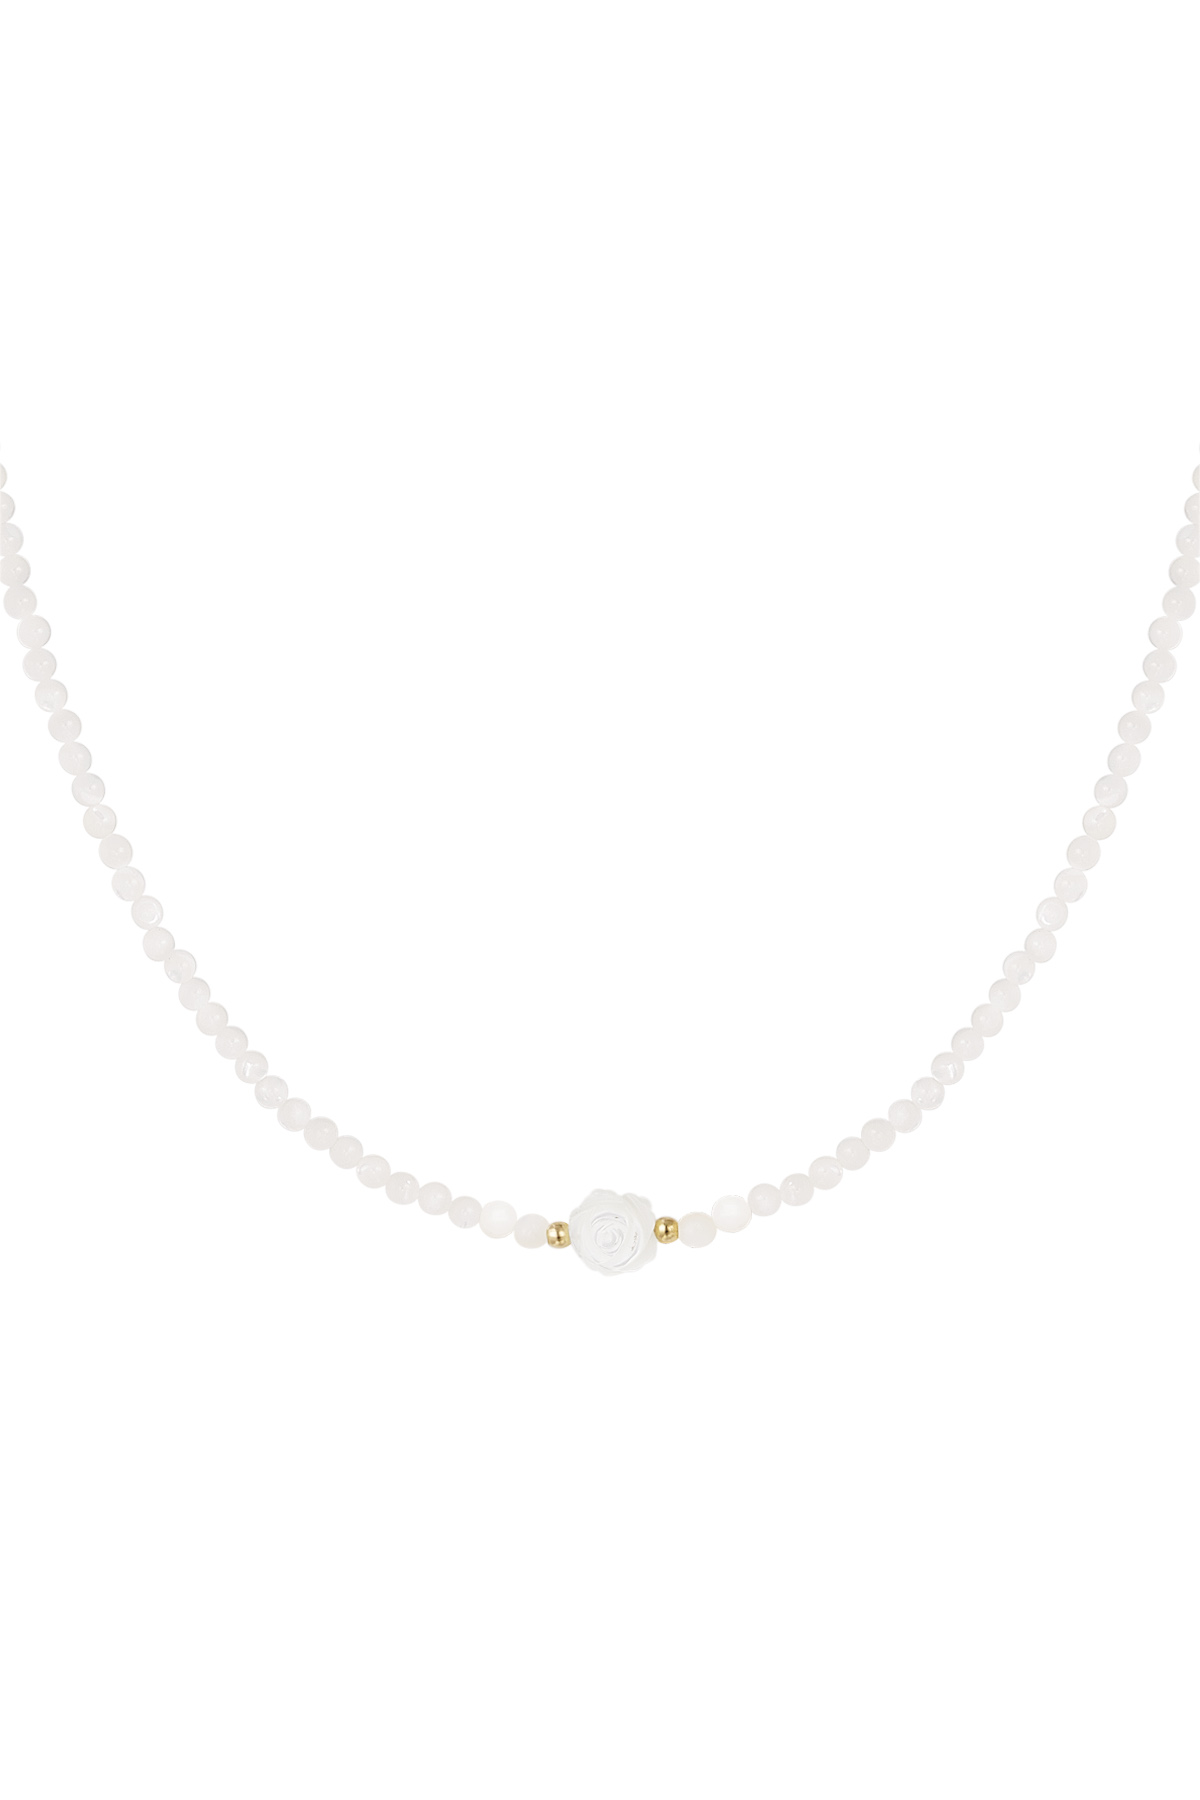 Gold / Halskette weiße Perlen - weiß/gold Bild24